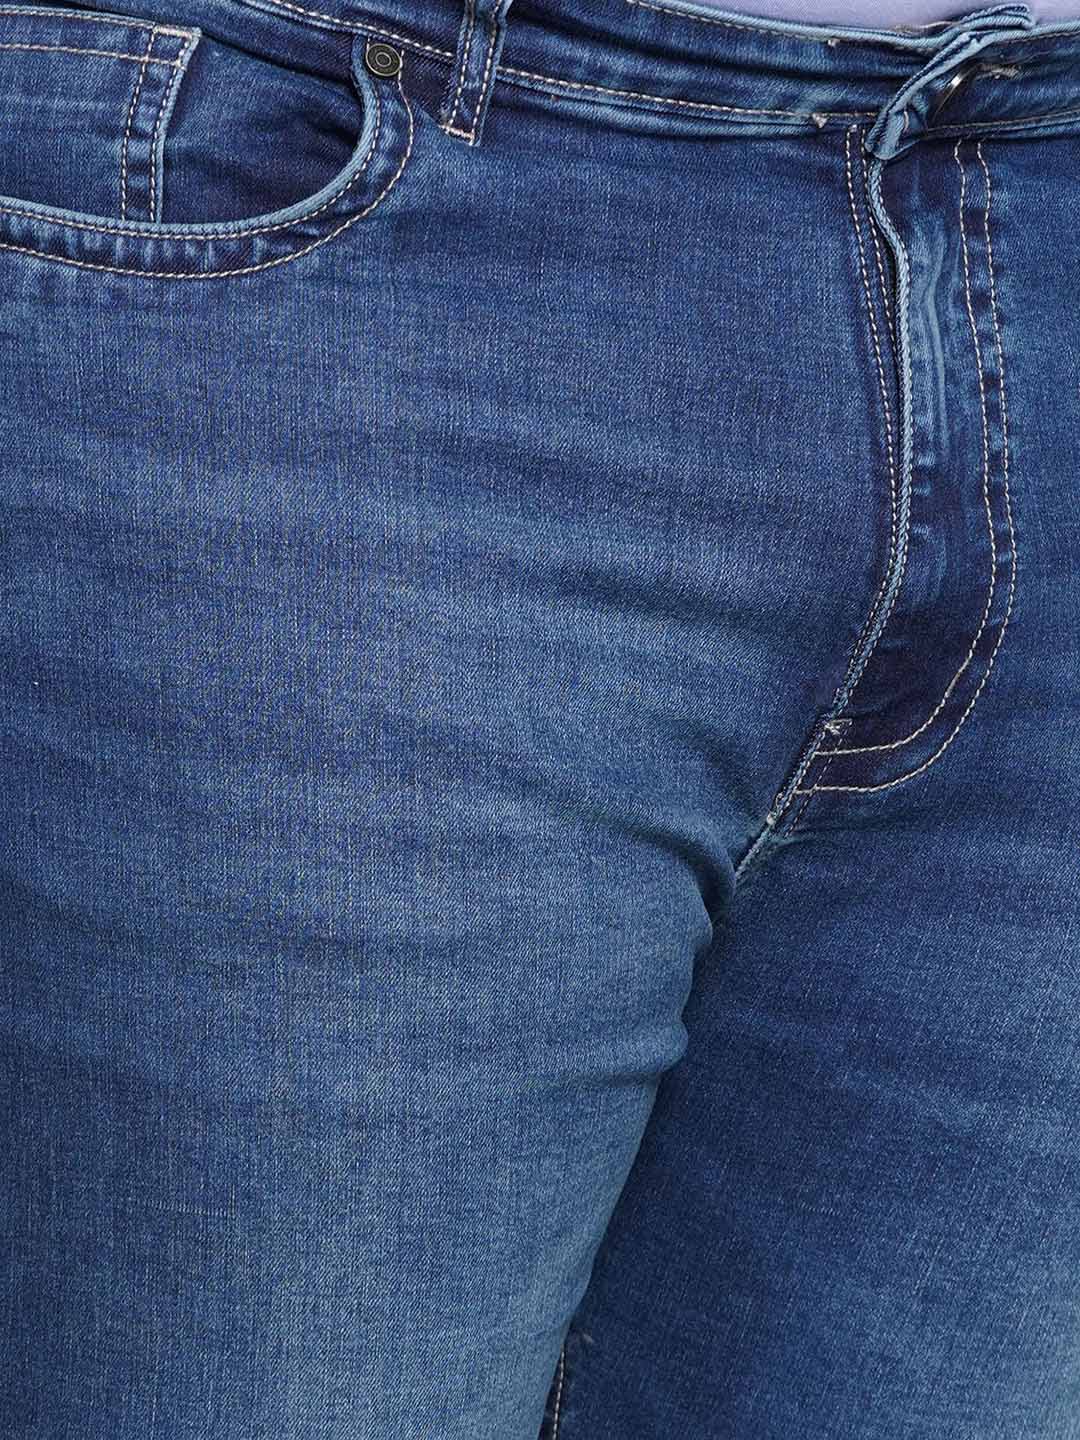 bottomwear/jeans/JPJ12437/jpj12437-2.jpg